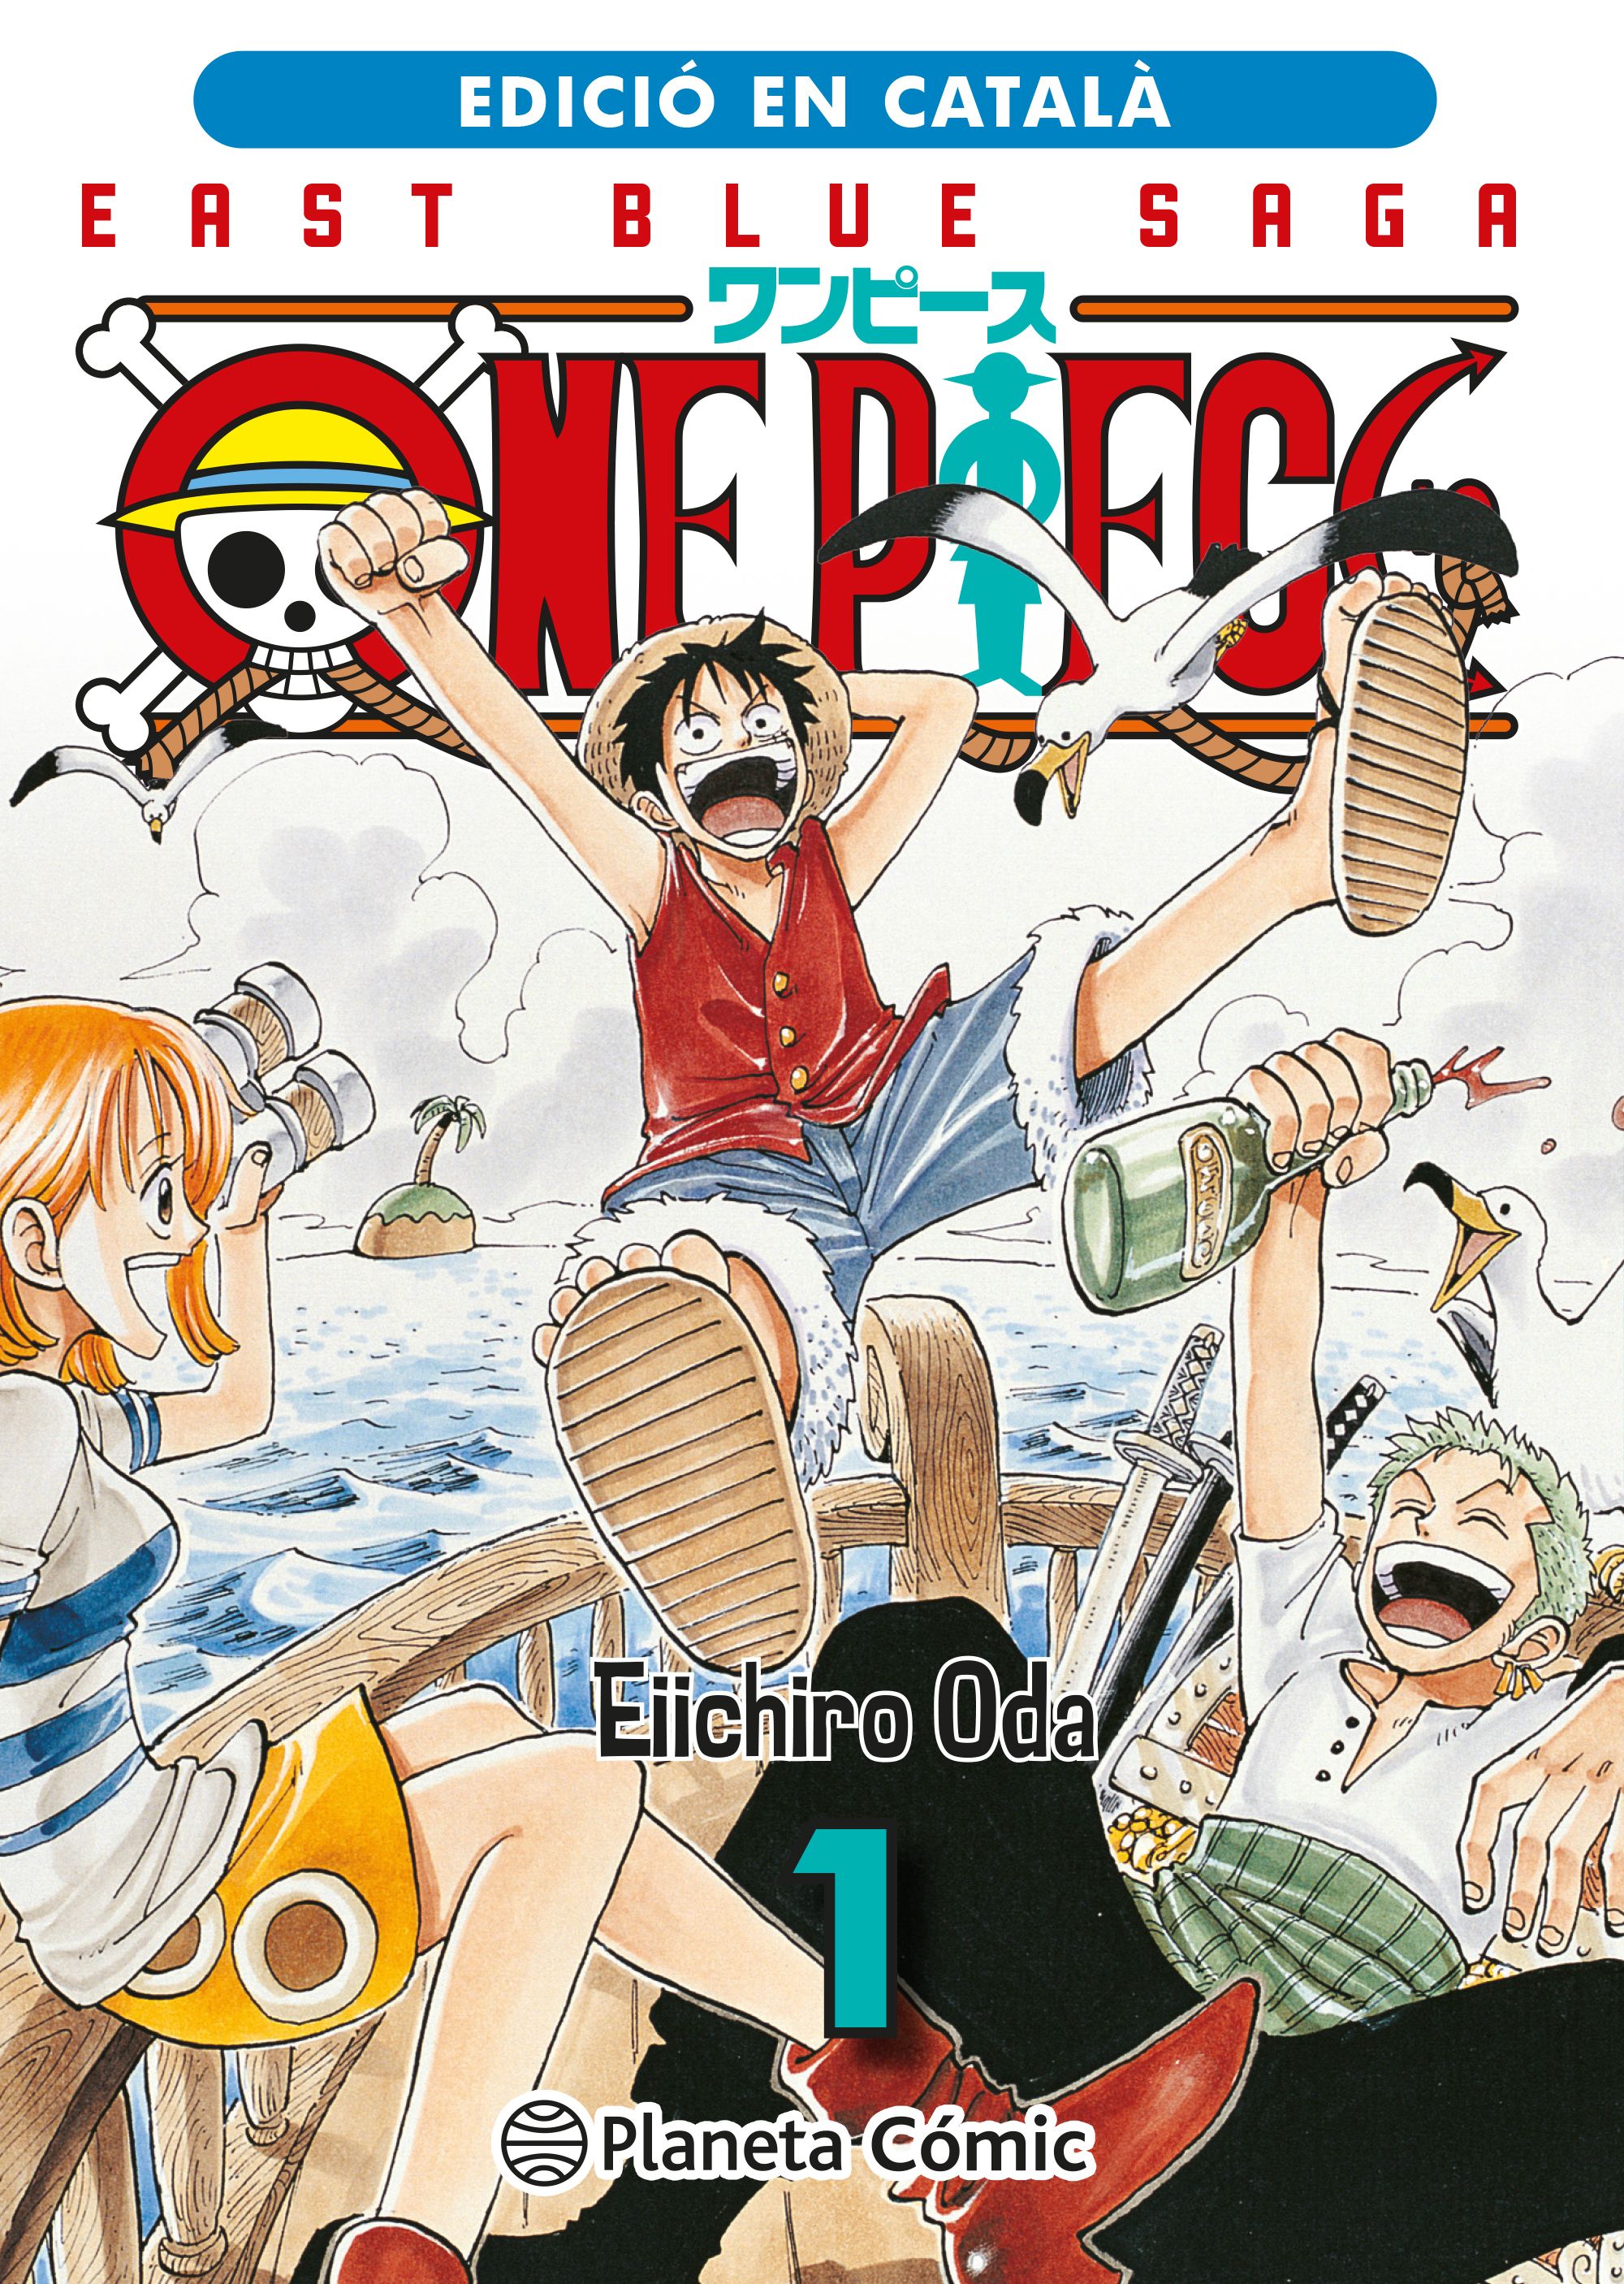 One Piece ficha a una estrella de Hollywood, ya tiene papel asignado